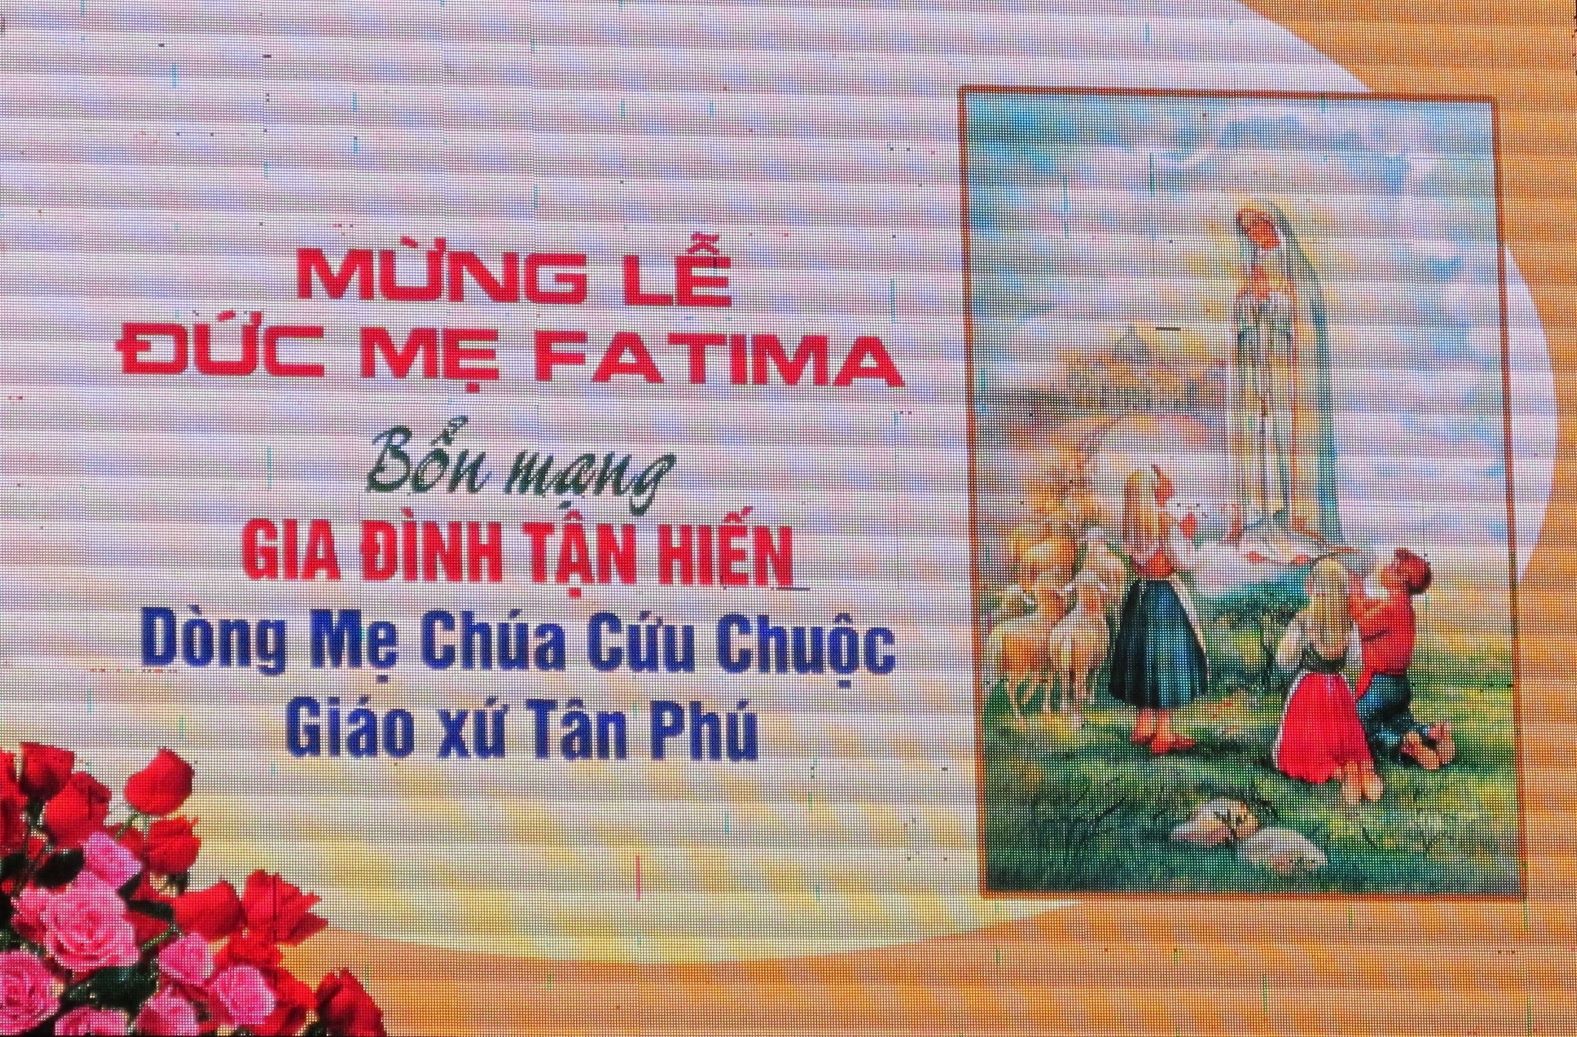 Gia đình Tận Hiến giáo xứ Tân Phú mừng Bổn Mạng